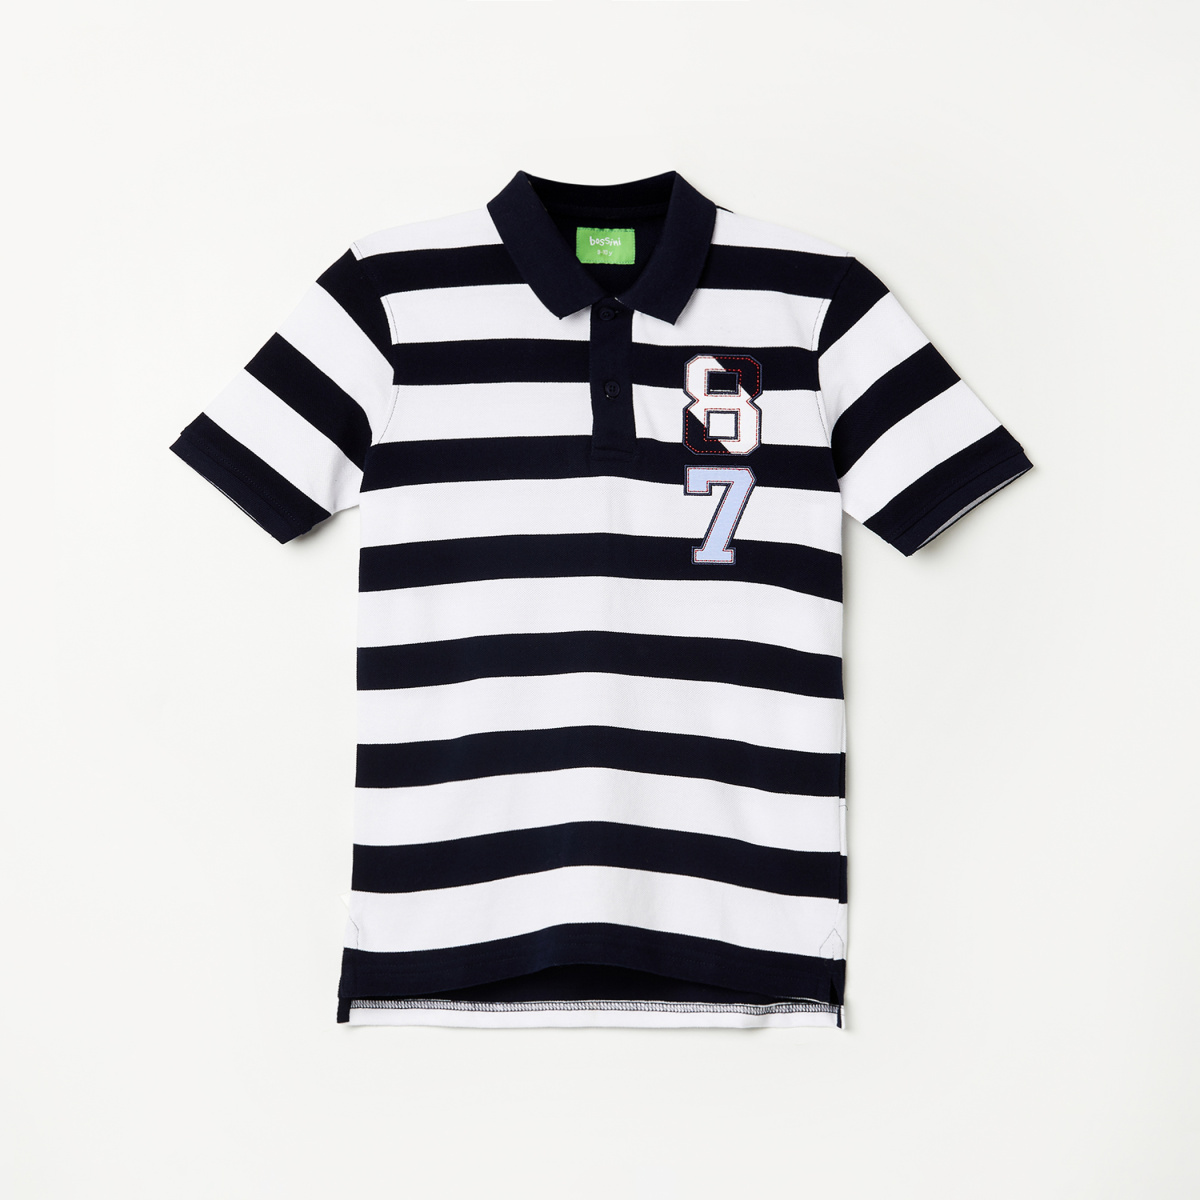 BOSSINI Boys Striped Short Sleeves Polo T-shirt